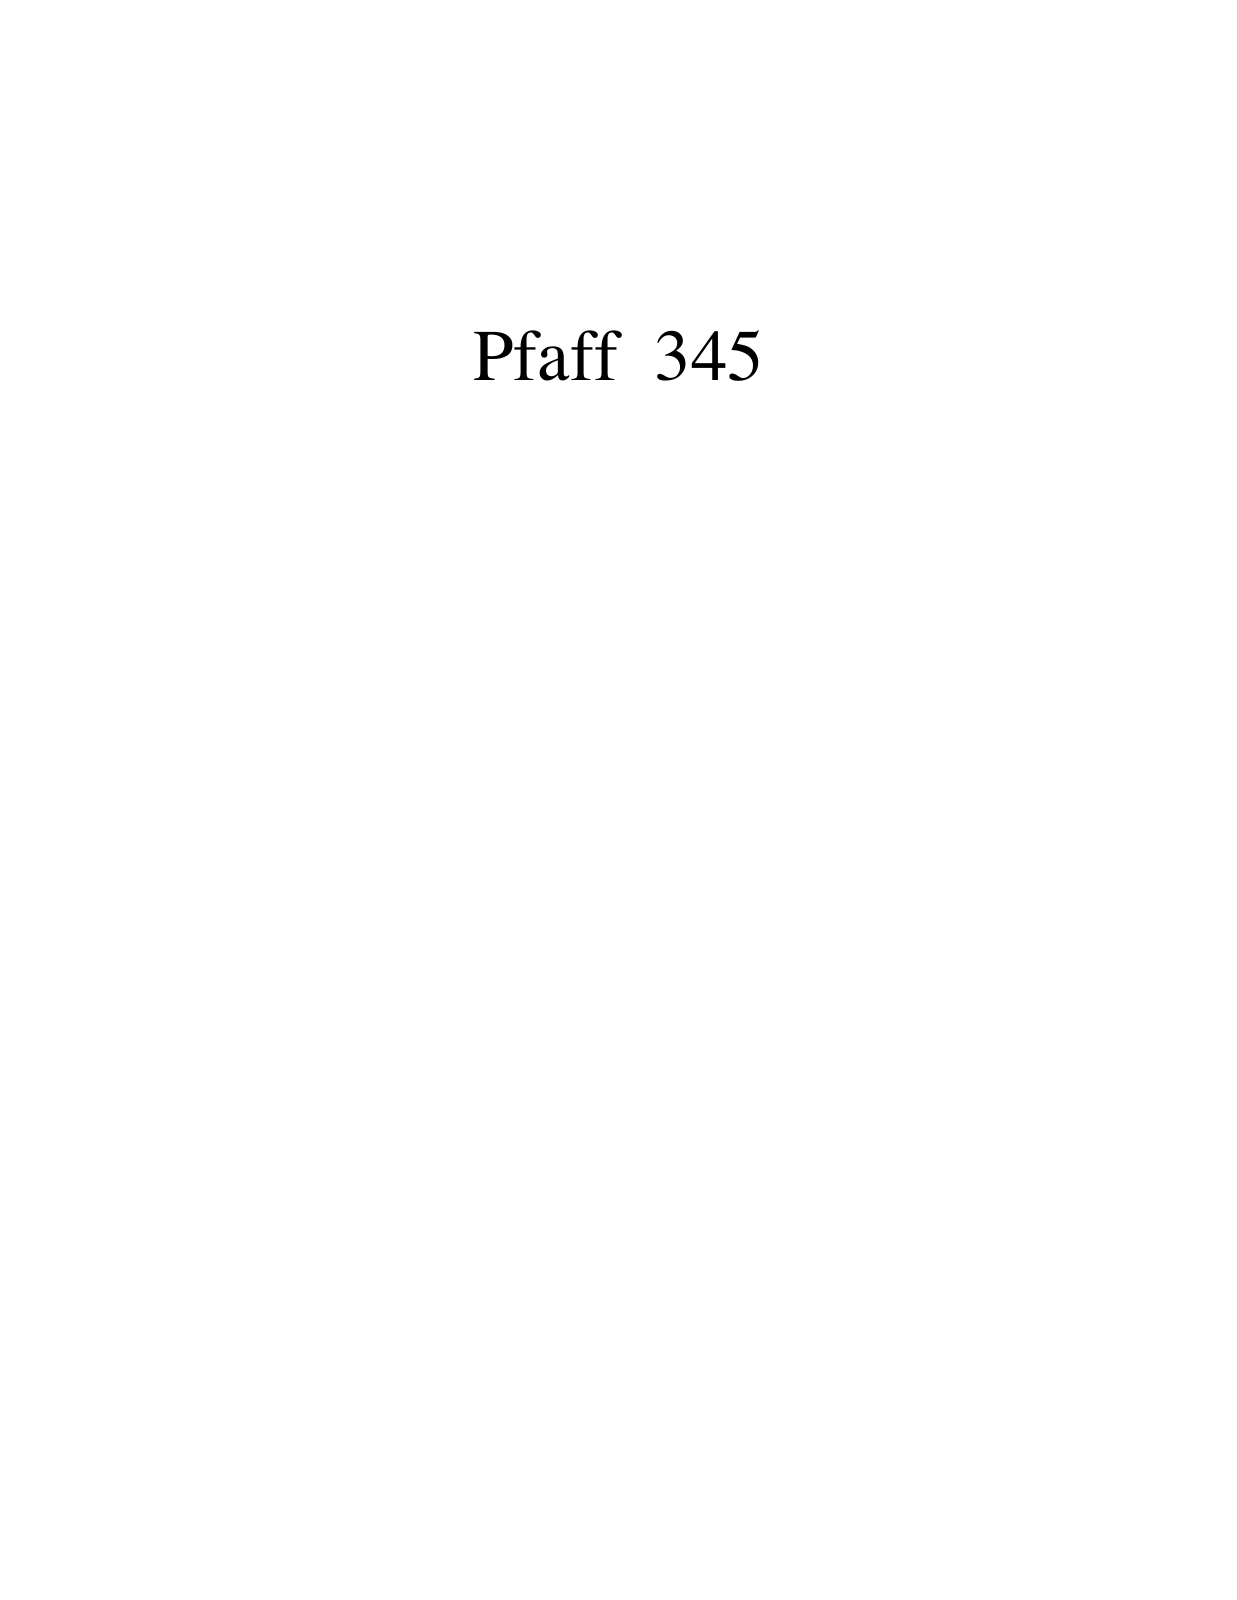 PFAFF 345 Parts List